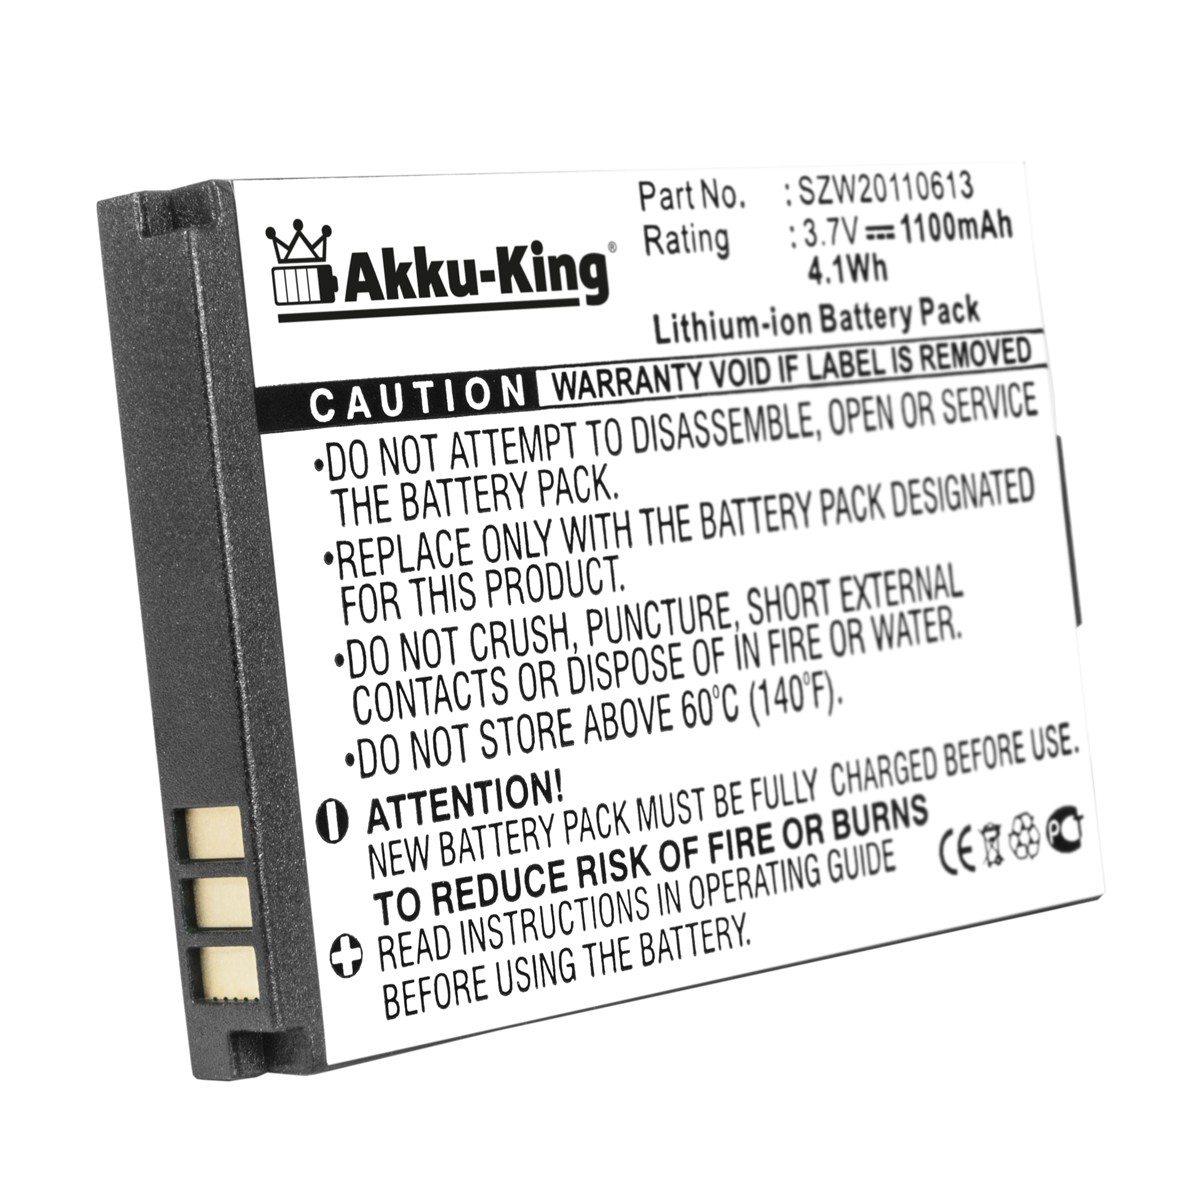 AKKU-KING Akku kompatibel mit Olympia 3.7 1100mAh SZW20110613 Handy-Akku, Li-Ion Volt